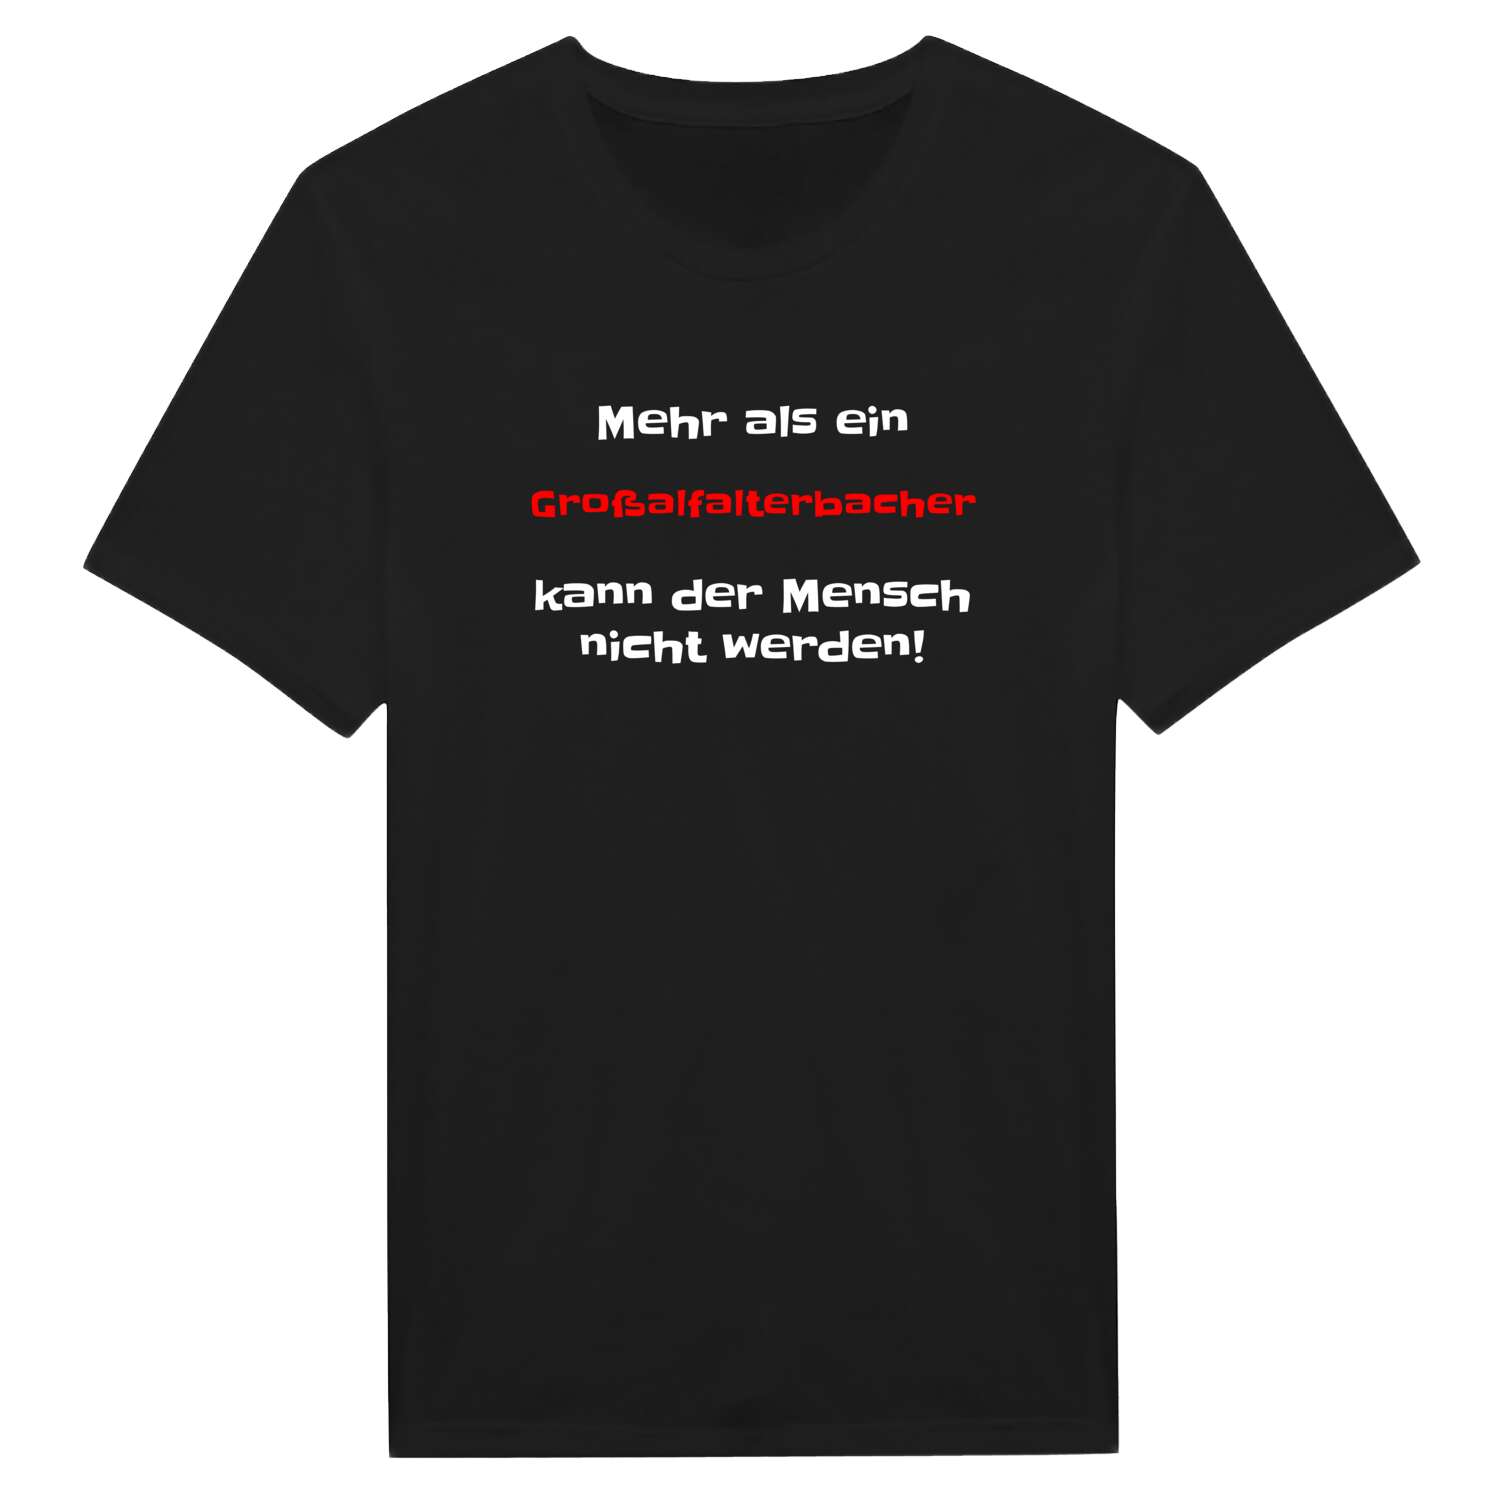 Großalfalterbach T-Shirt »Mehr als ein«